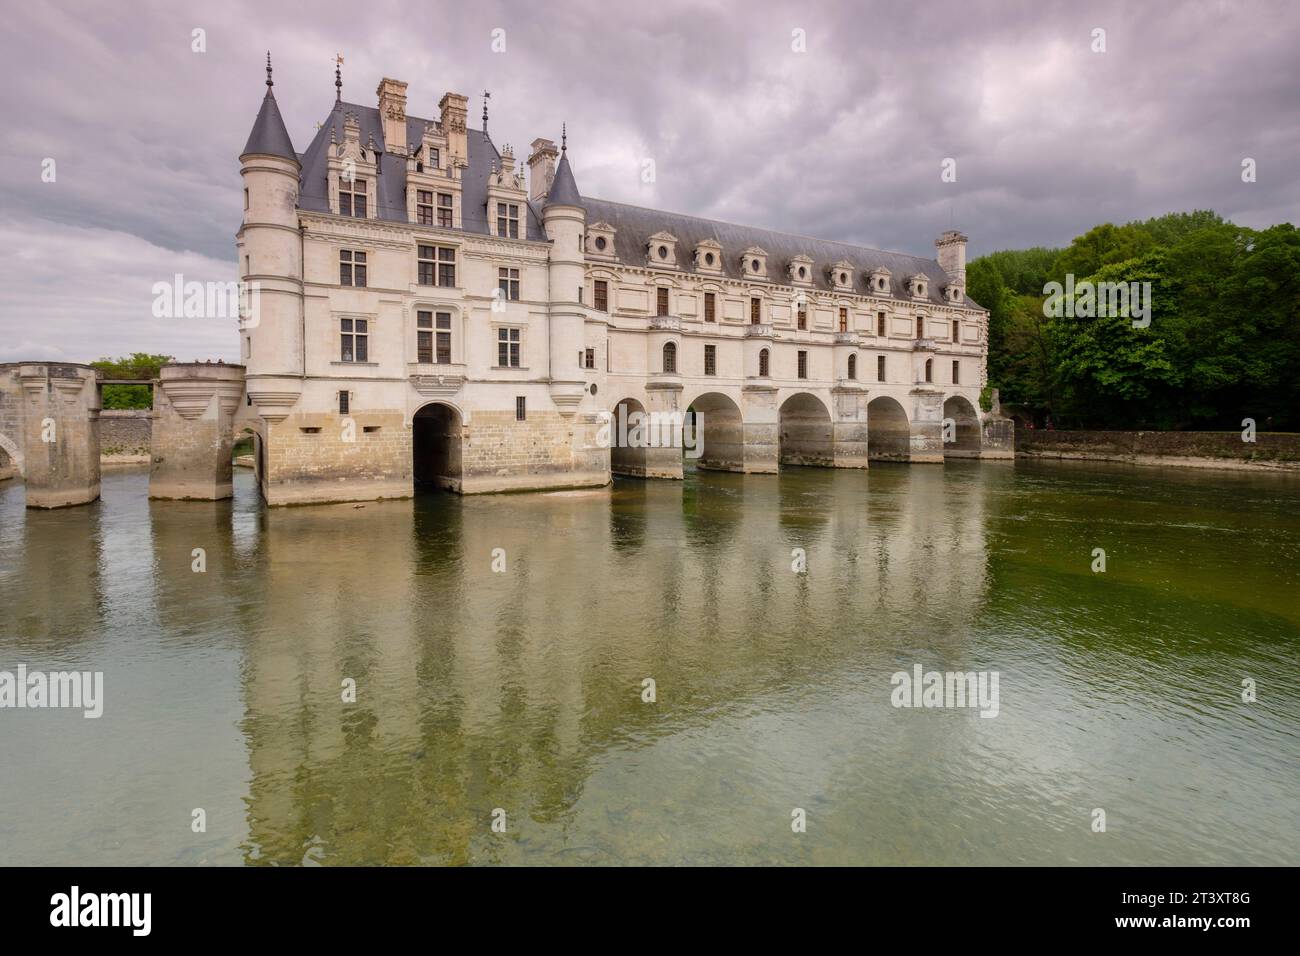 arcadas del Puente de Diana, castillo de Chenonceau, siglo XVI, Chenonceaux, departamento de Indre y Loira,France,Western Europe. Stock Photo